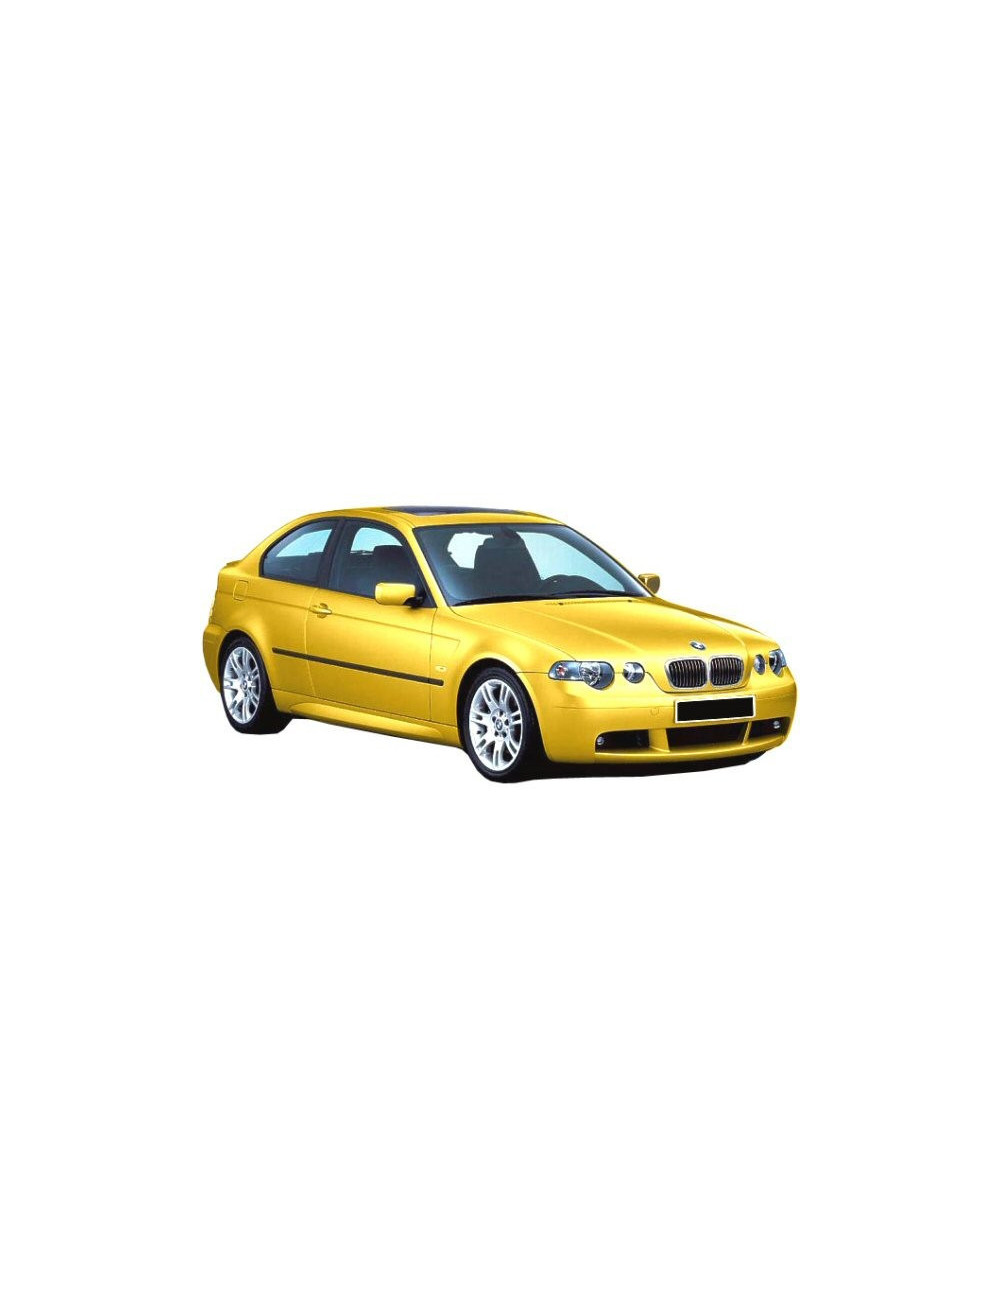 PARAURTI ANTERIORE IN VETRORESINA BMW SERIE 3 E46 COMPACT M LOOK